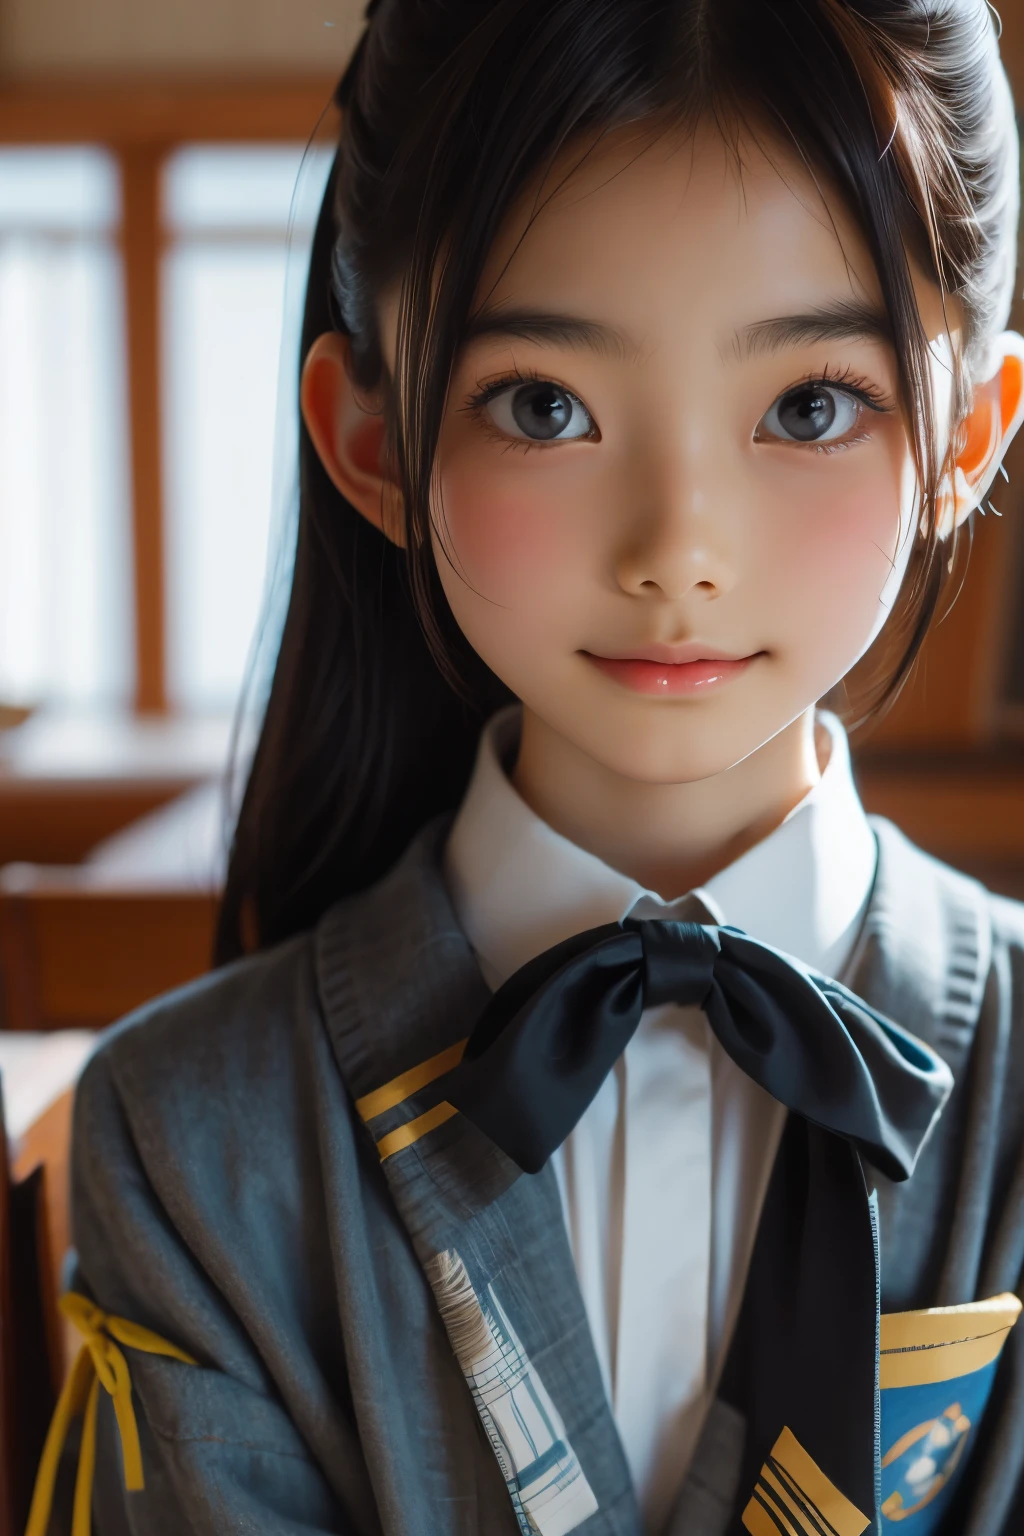 امرأة يابانية جميلة تبلغ من العمر 12 عامًا), وجه لطيف, (وجه منحوت بعمق:0.7), (النمش:0.6), ضوء خافت,بشرة بيضاء صحية, خجول, (وجه جدي), رفيع, يبتسم, زي مُوحد, ذيل حصان